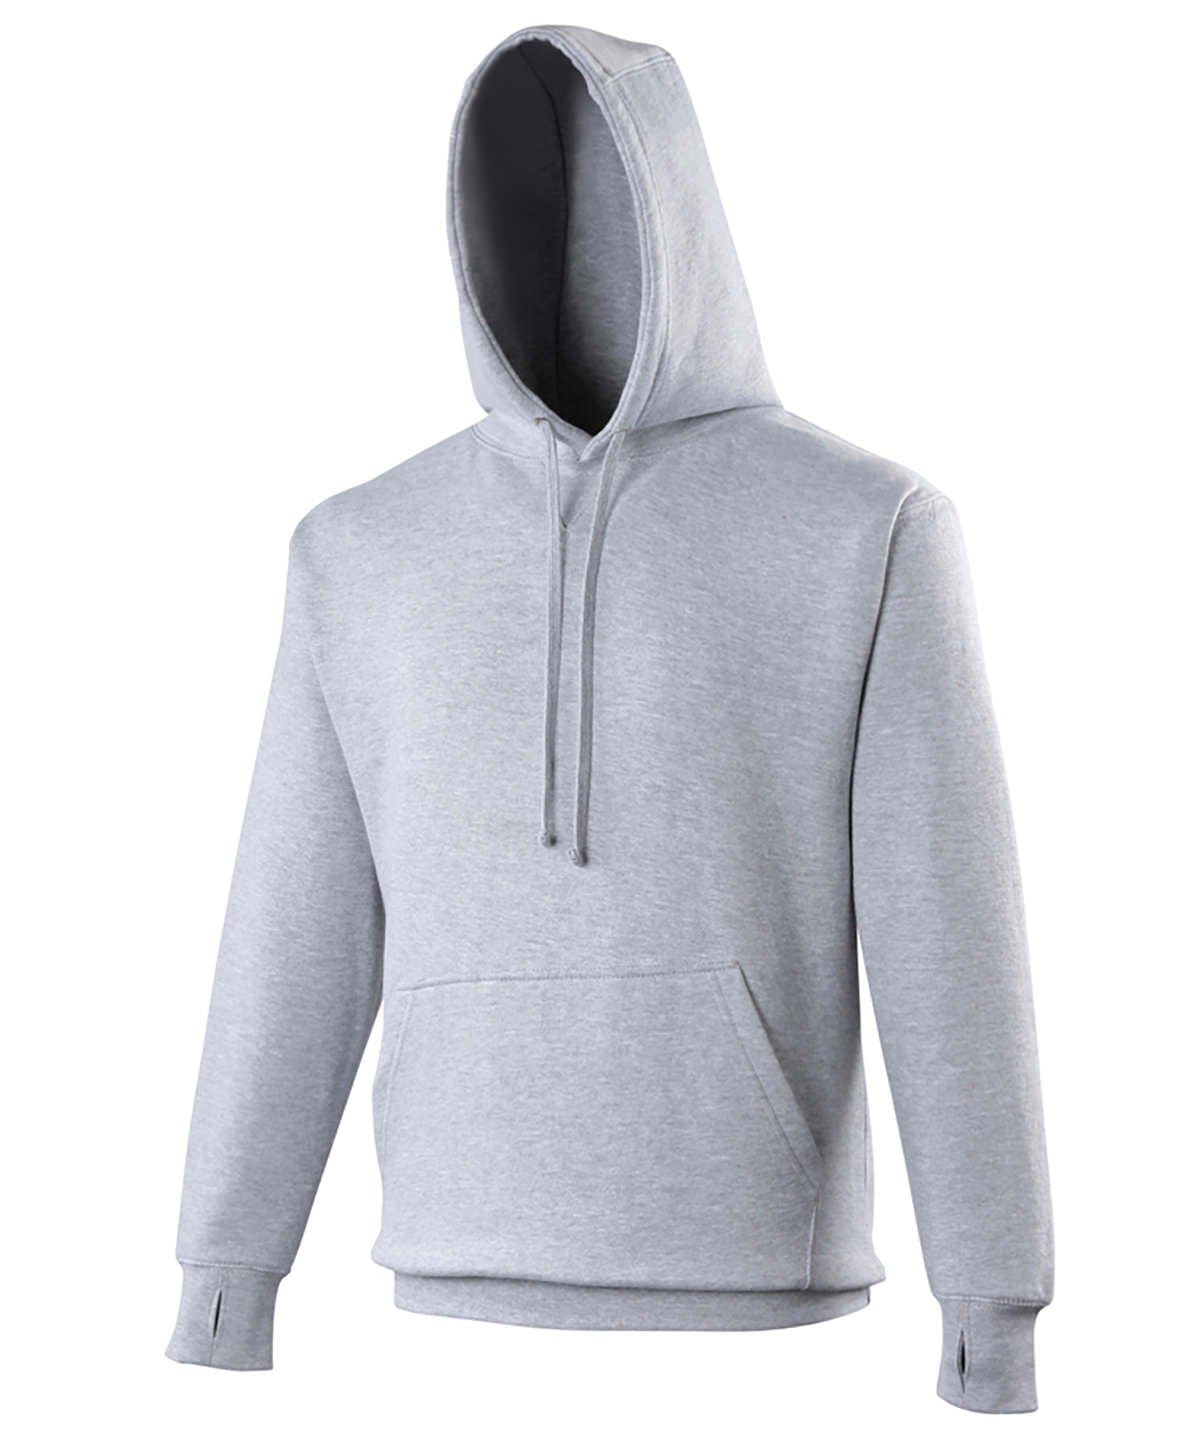 Personalised Hoodies - Dark Grey AWDis Just Hoods Street hoodie